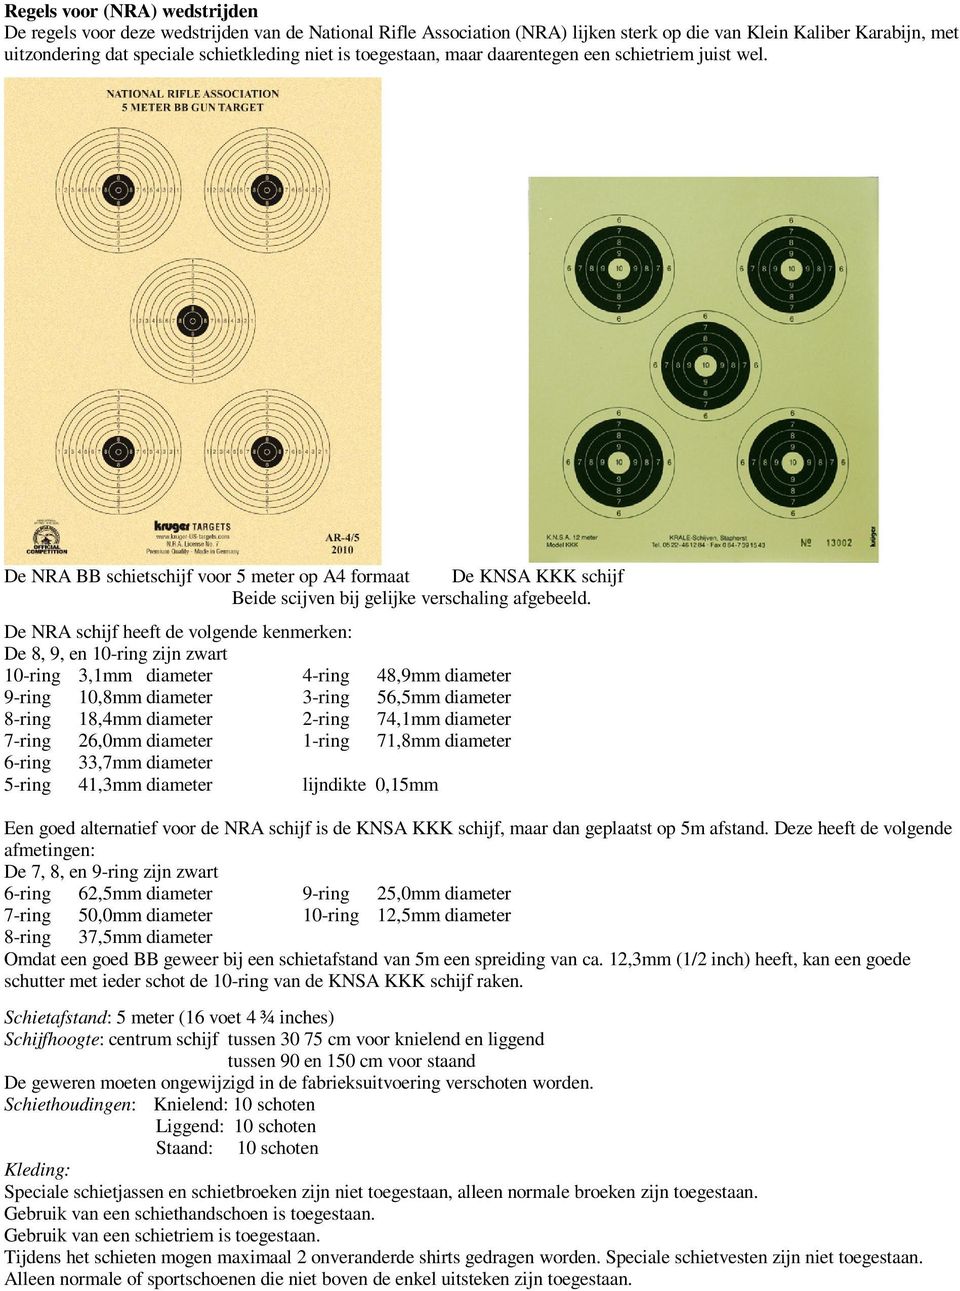 De NRA schijf heeft de volgende kenmerken: De 8, 9, en 10-ring zijn zwart 10-ring 3,1mm diameter 4-ring 48,9mm diameter 9-ring 10,8mm diameter 3-ring 56,5mm diameter 8-ring 18,4mm diameter 2-ring